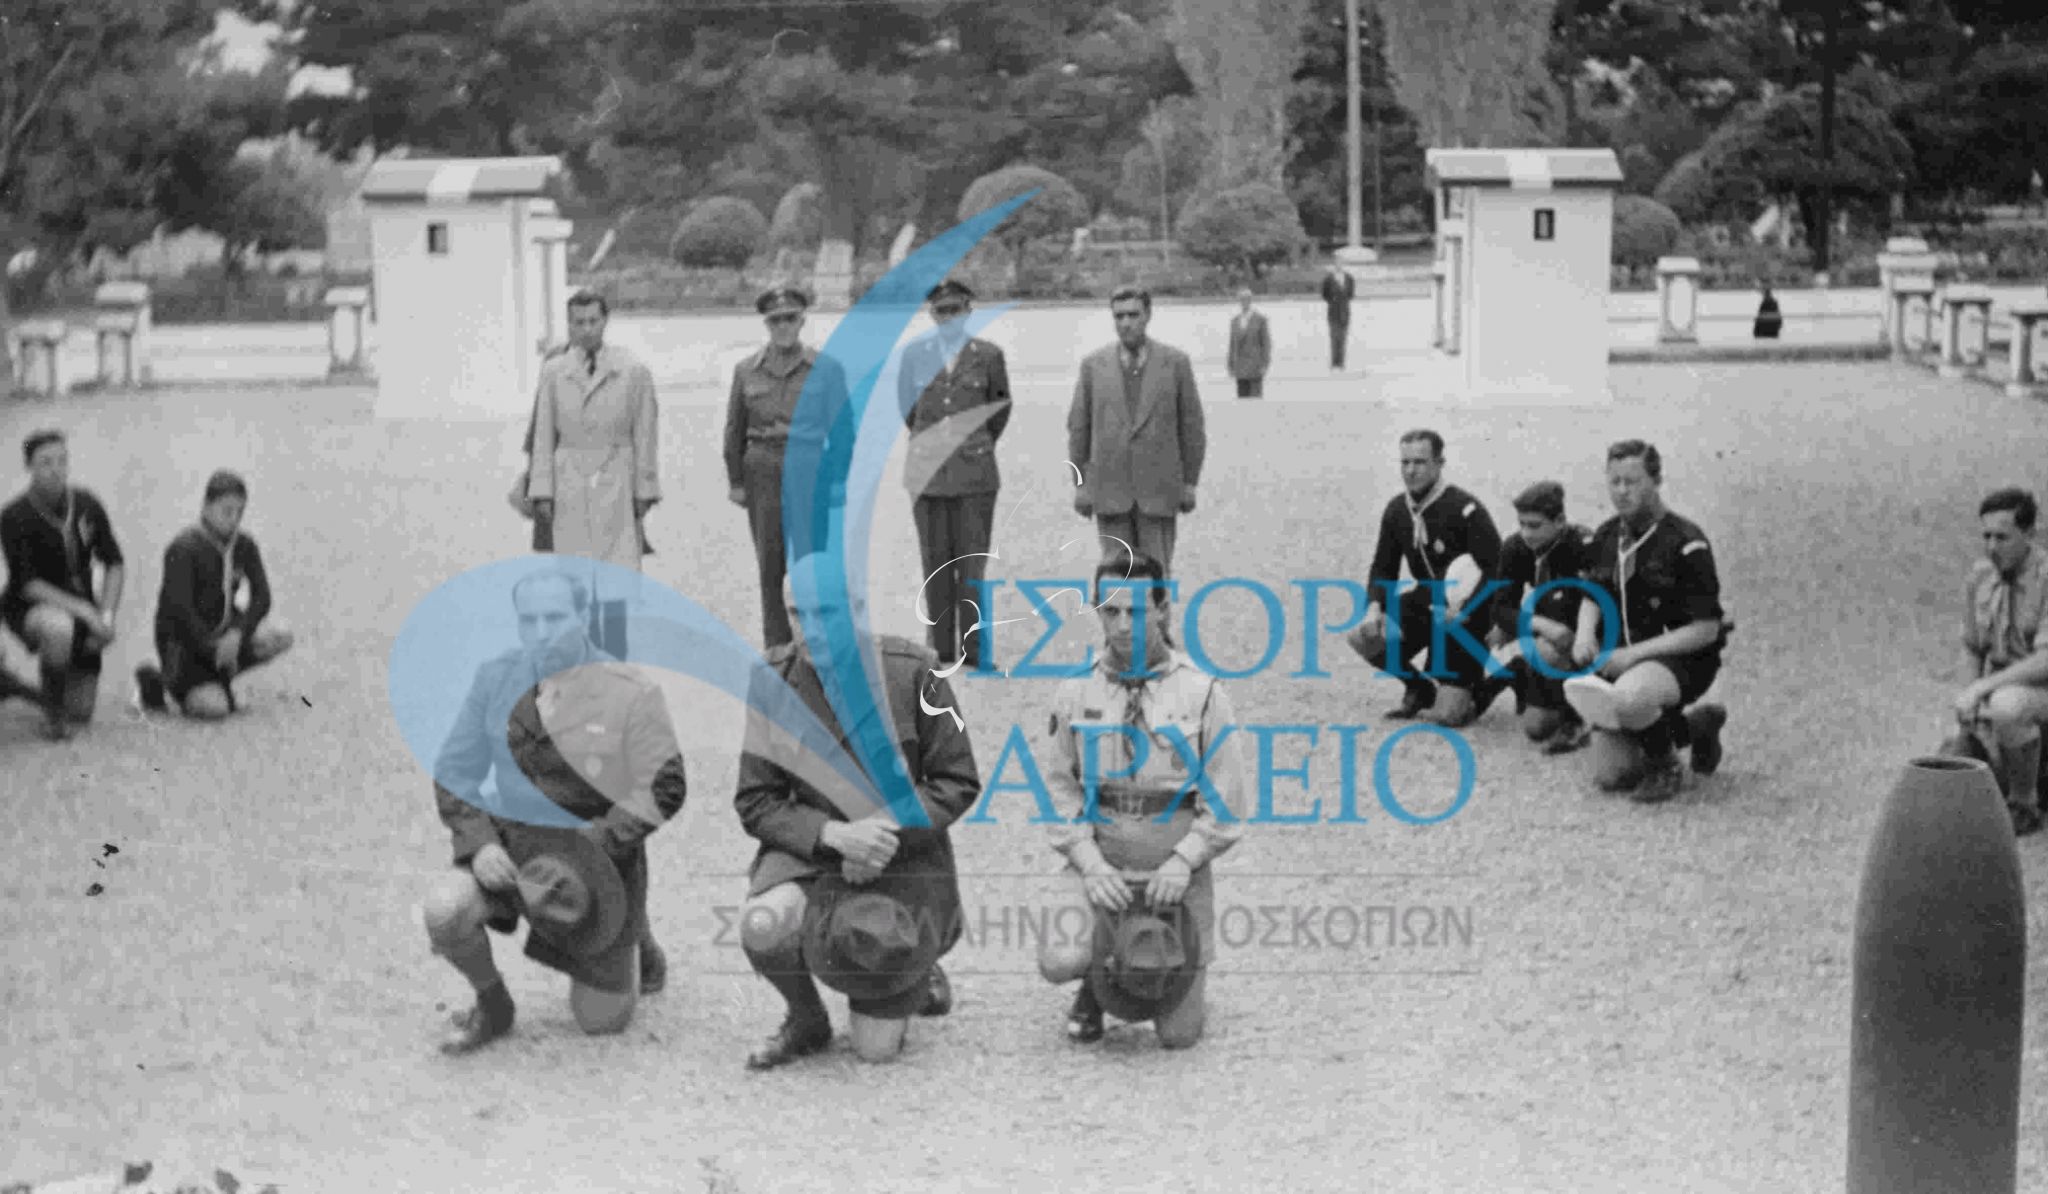 Αντιπροσωπεία των Προσκόπων Θεσσαλονίκης καταθέτει κατά την κατάθεση στεφάνου στο Ηρώο του Γ' Σώματος Στρατού  το 1950.